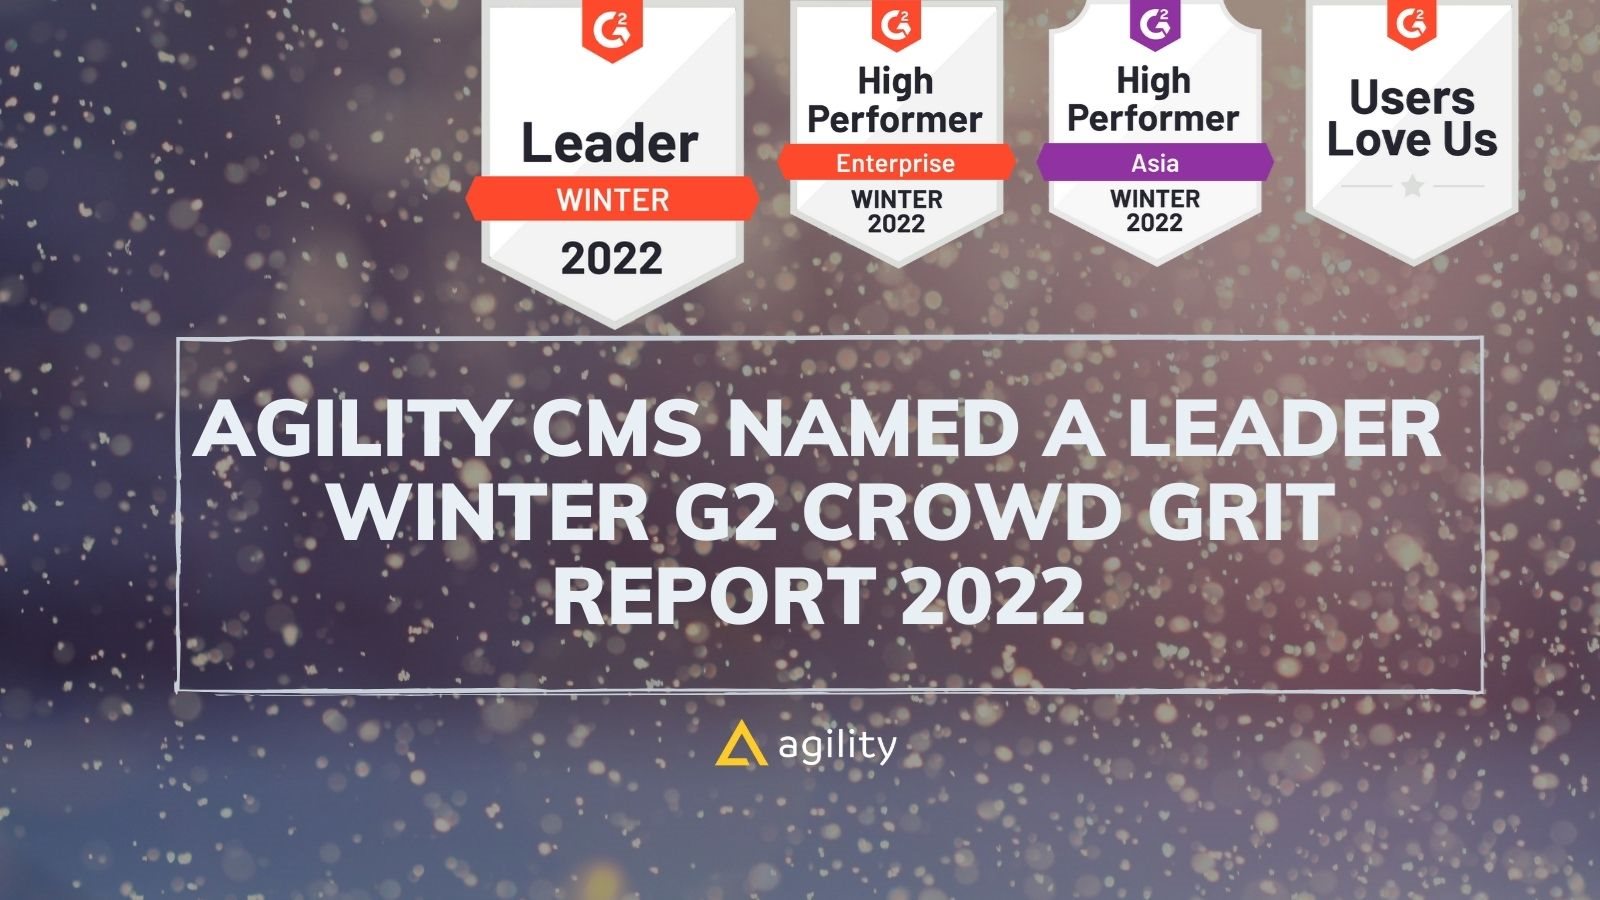 Agility CMS named G2 leader for Headless CMS